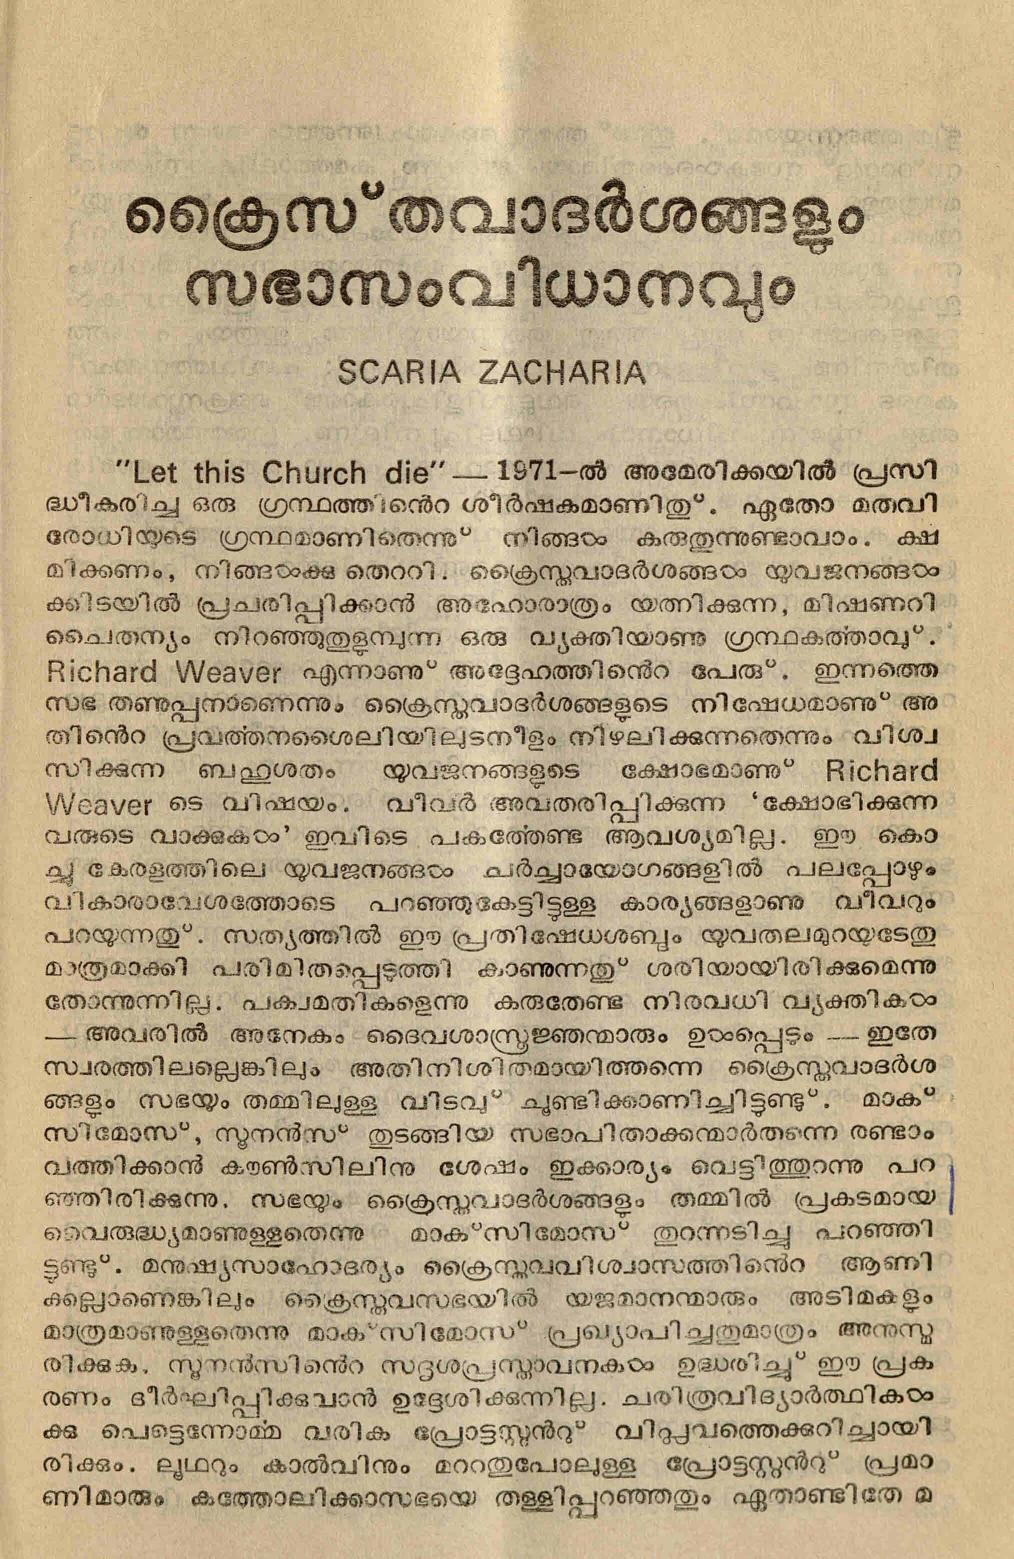 1978 - ക്രൈസ്തവാദർശങ്ങളും സഭാ സംവിധാനവും - സ്കറിയ സക്കറിയ